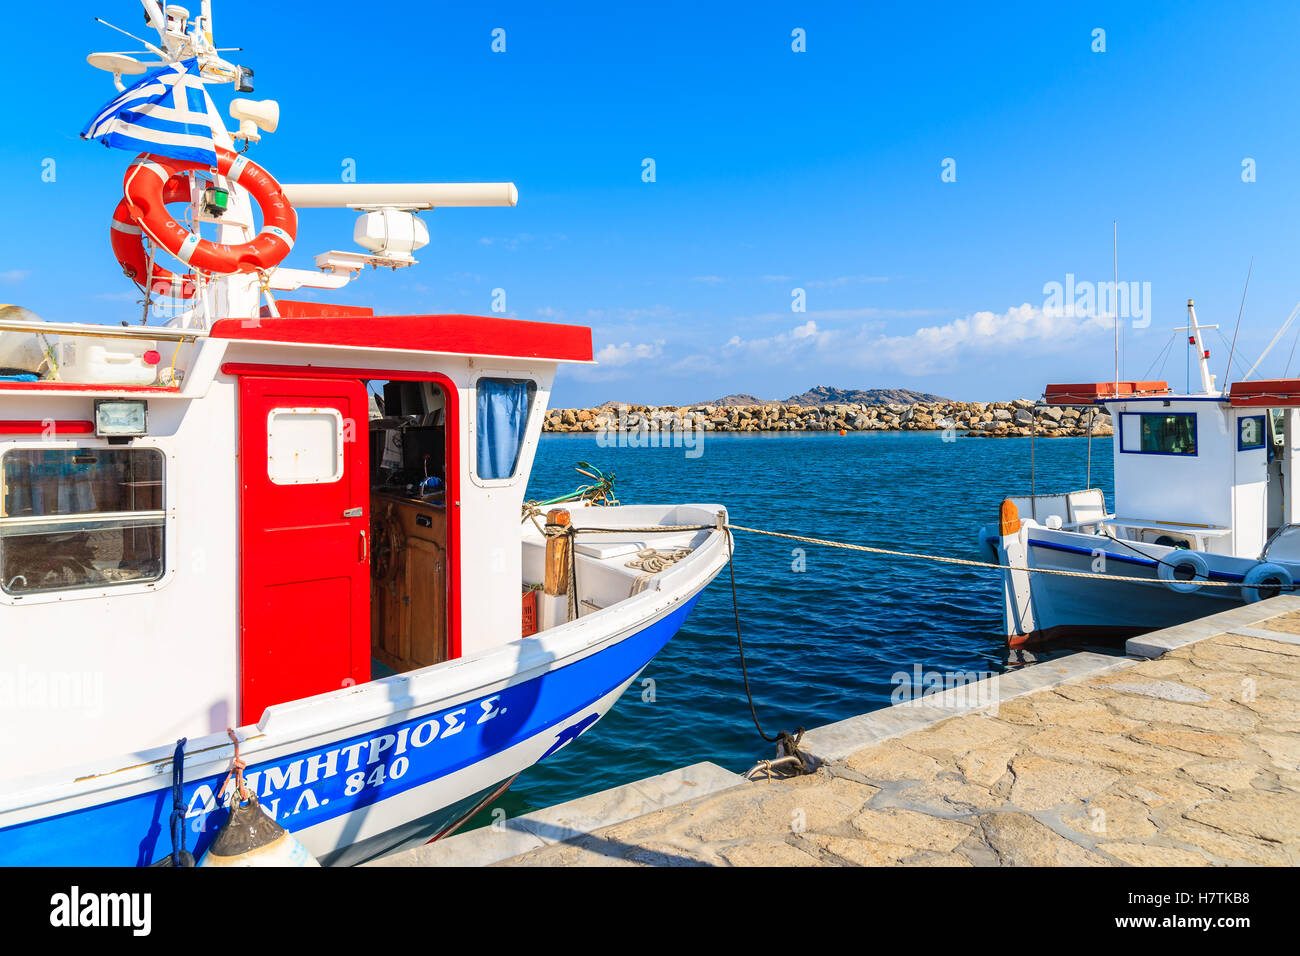 NAOUSSA PORTA, isola di paros - 18 Maggio 2016: tipica barca da pesca nel porto di Naoussa, isola di Paros, Grecia. Foto Stock